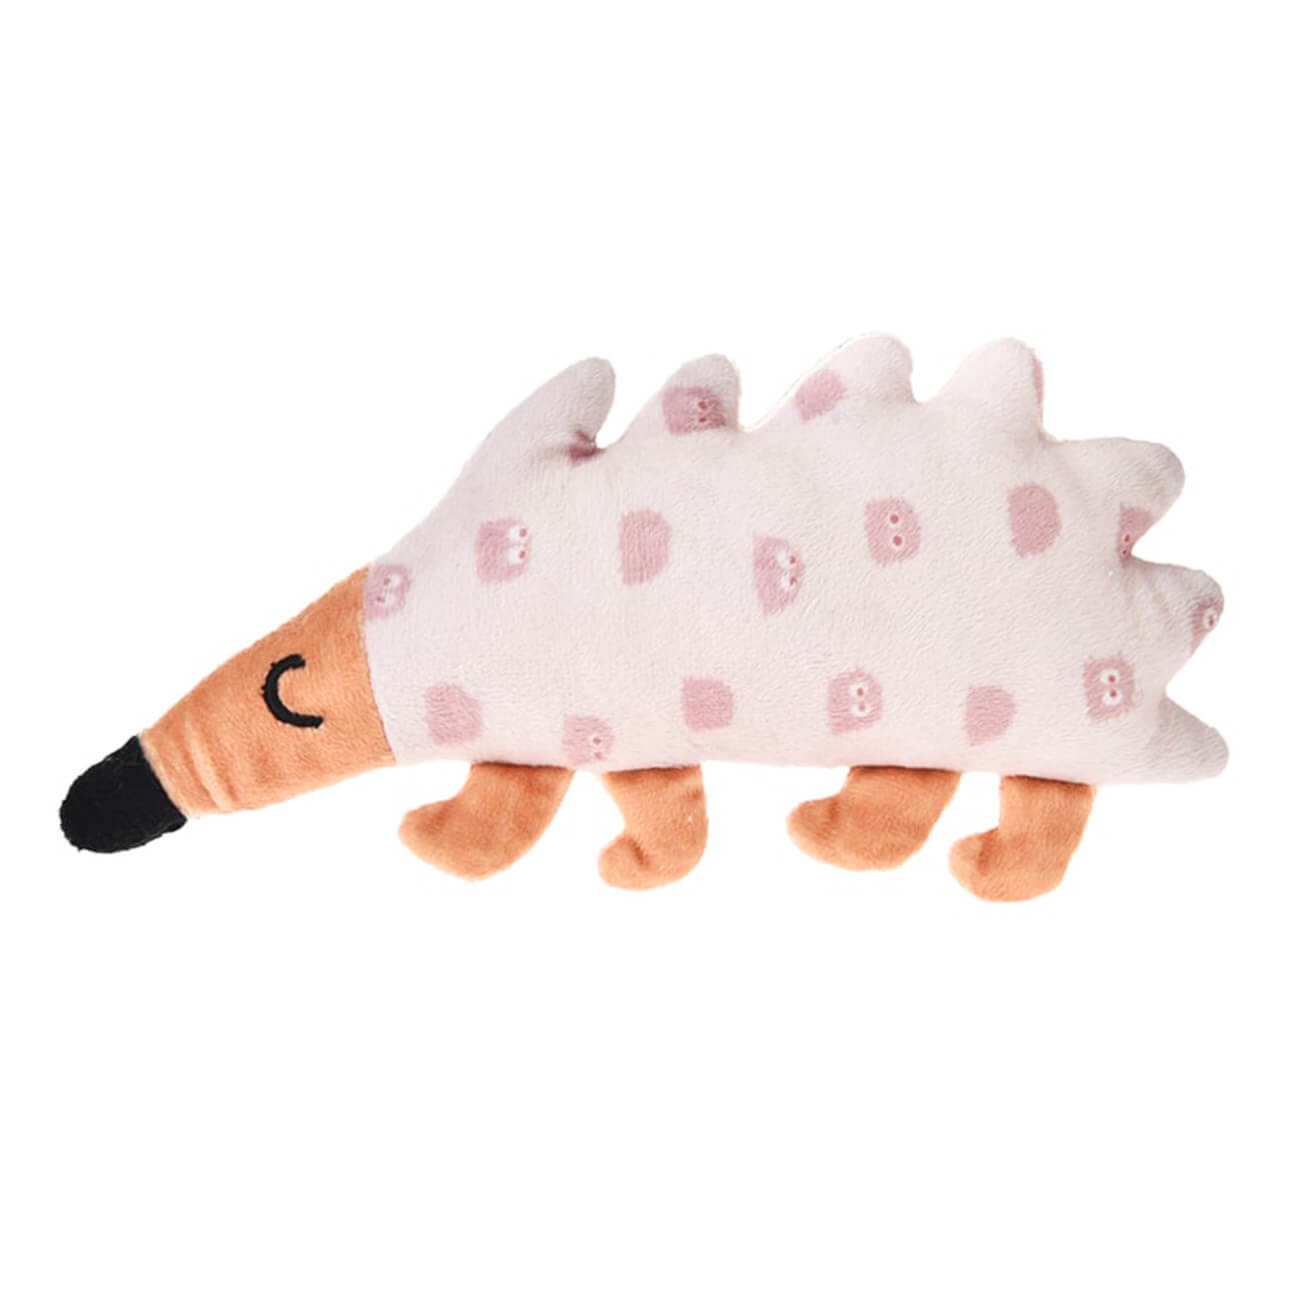 Игрушка для щенков, 20х10 см, полиэстер, розовая, Ежик, Small pet flamingo игрушка для щенков косточки плюшевые со звуком 10см